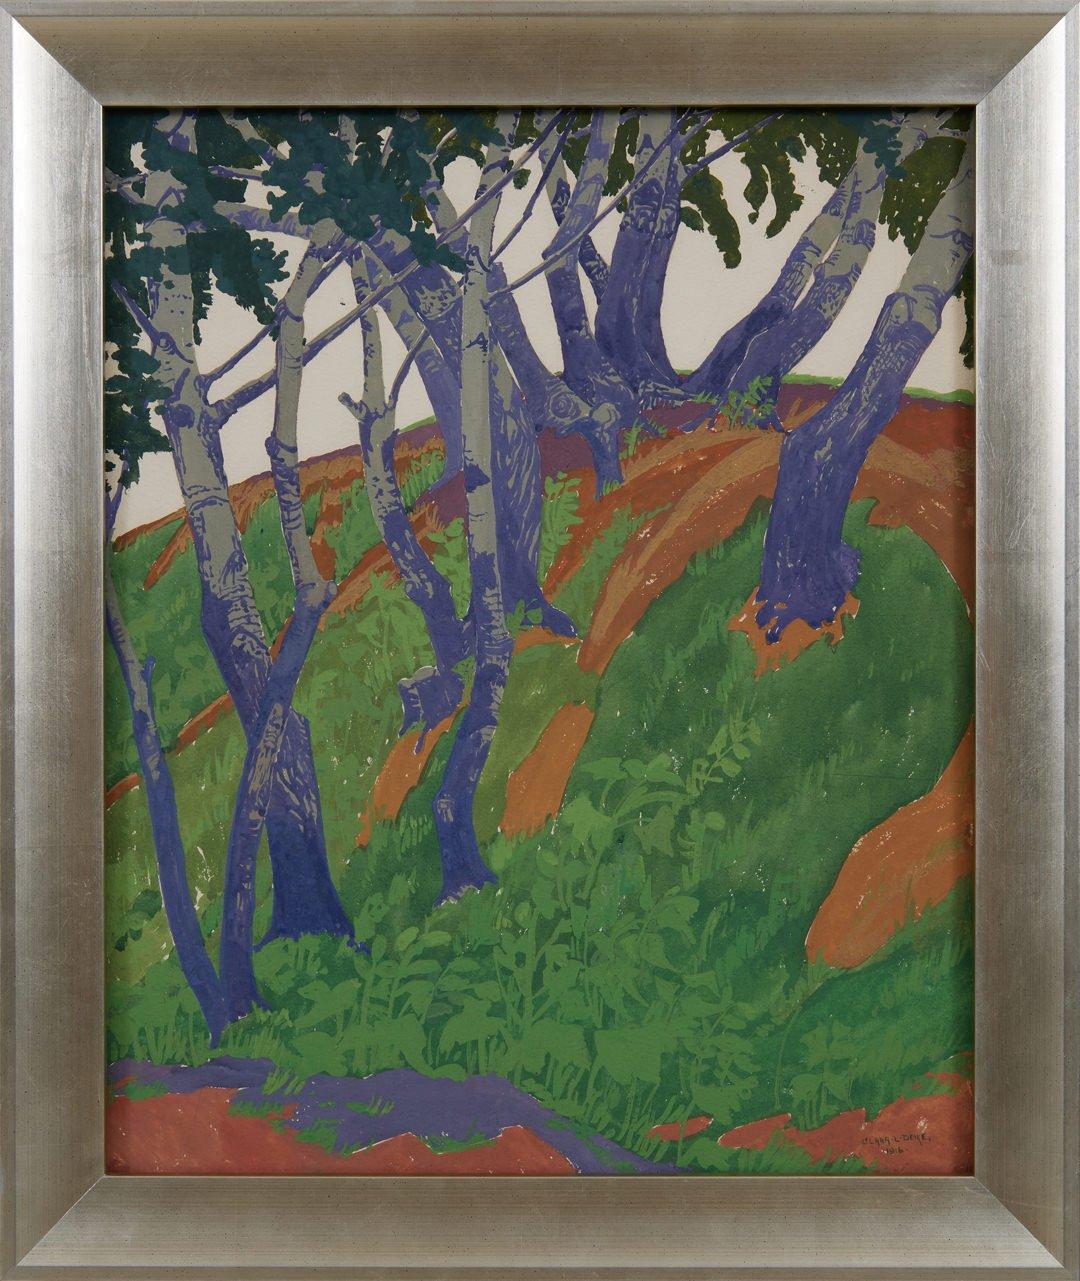 Hillside and Stream, moderne Malerei der Cleveland School des frühen 20. Jahrhunderts – Painting von Clara Deike